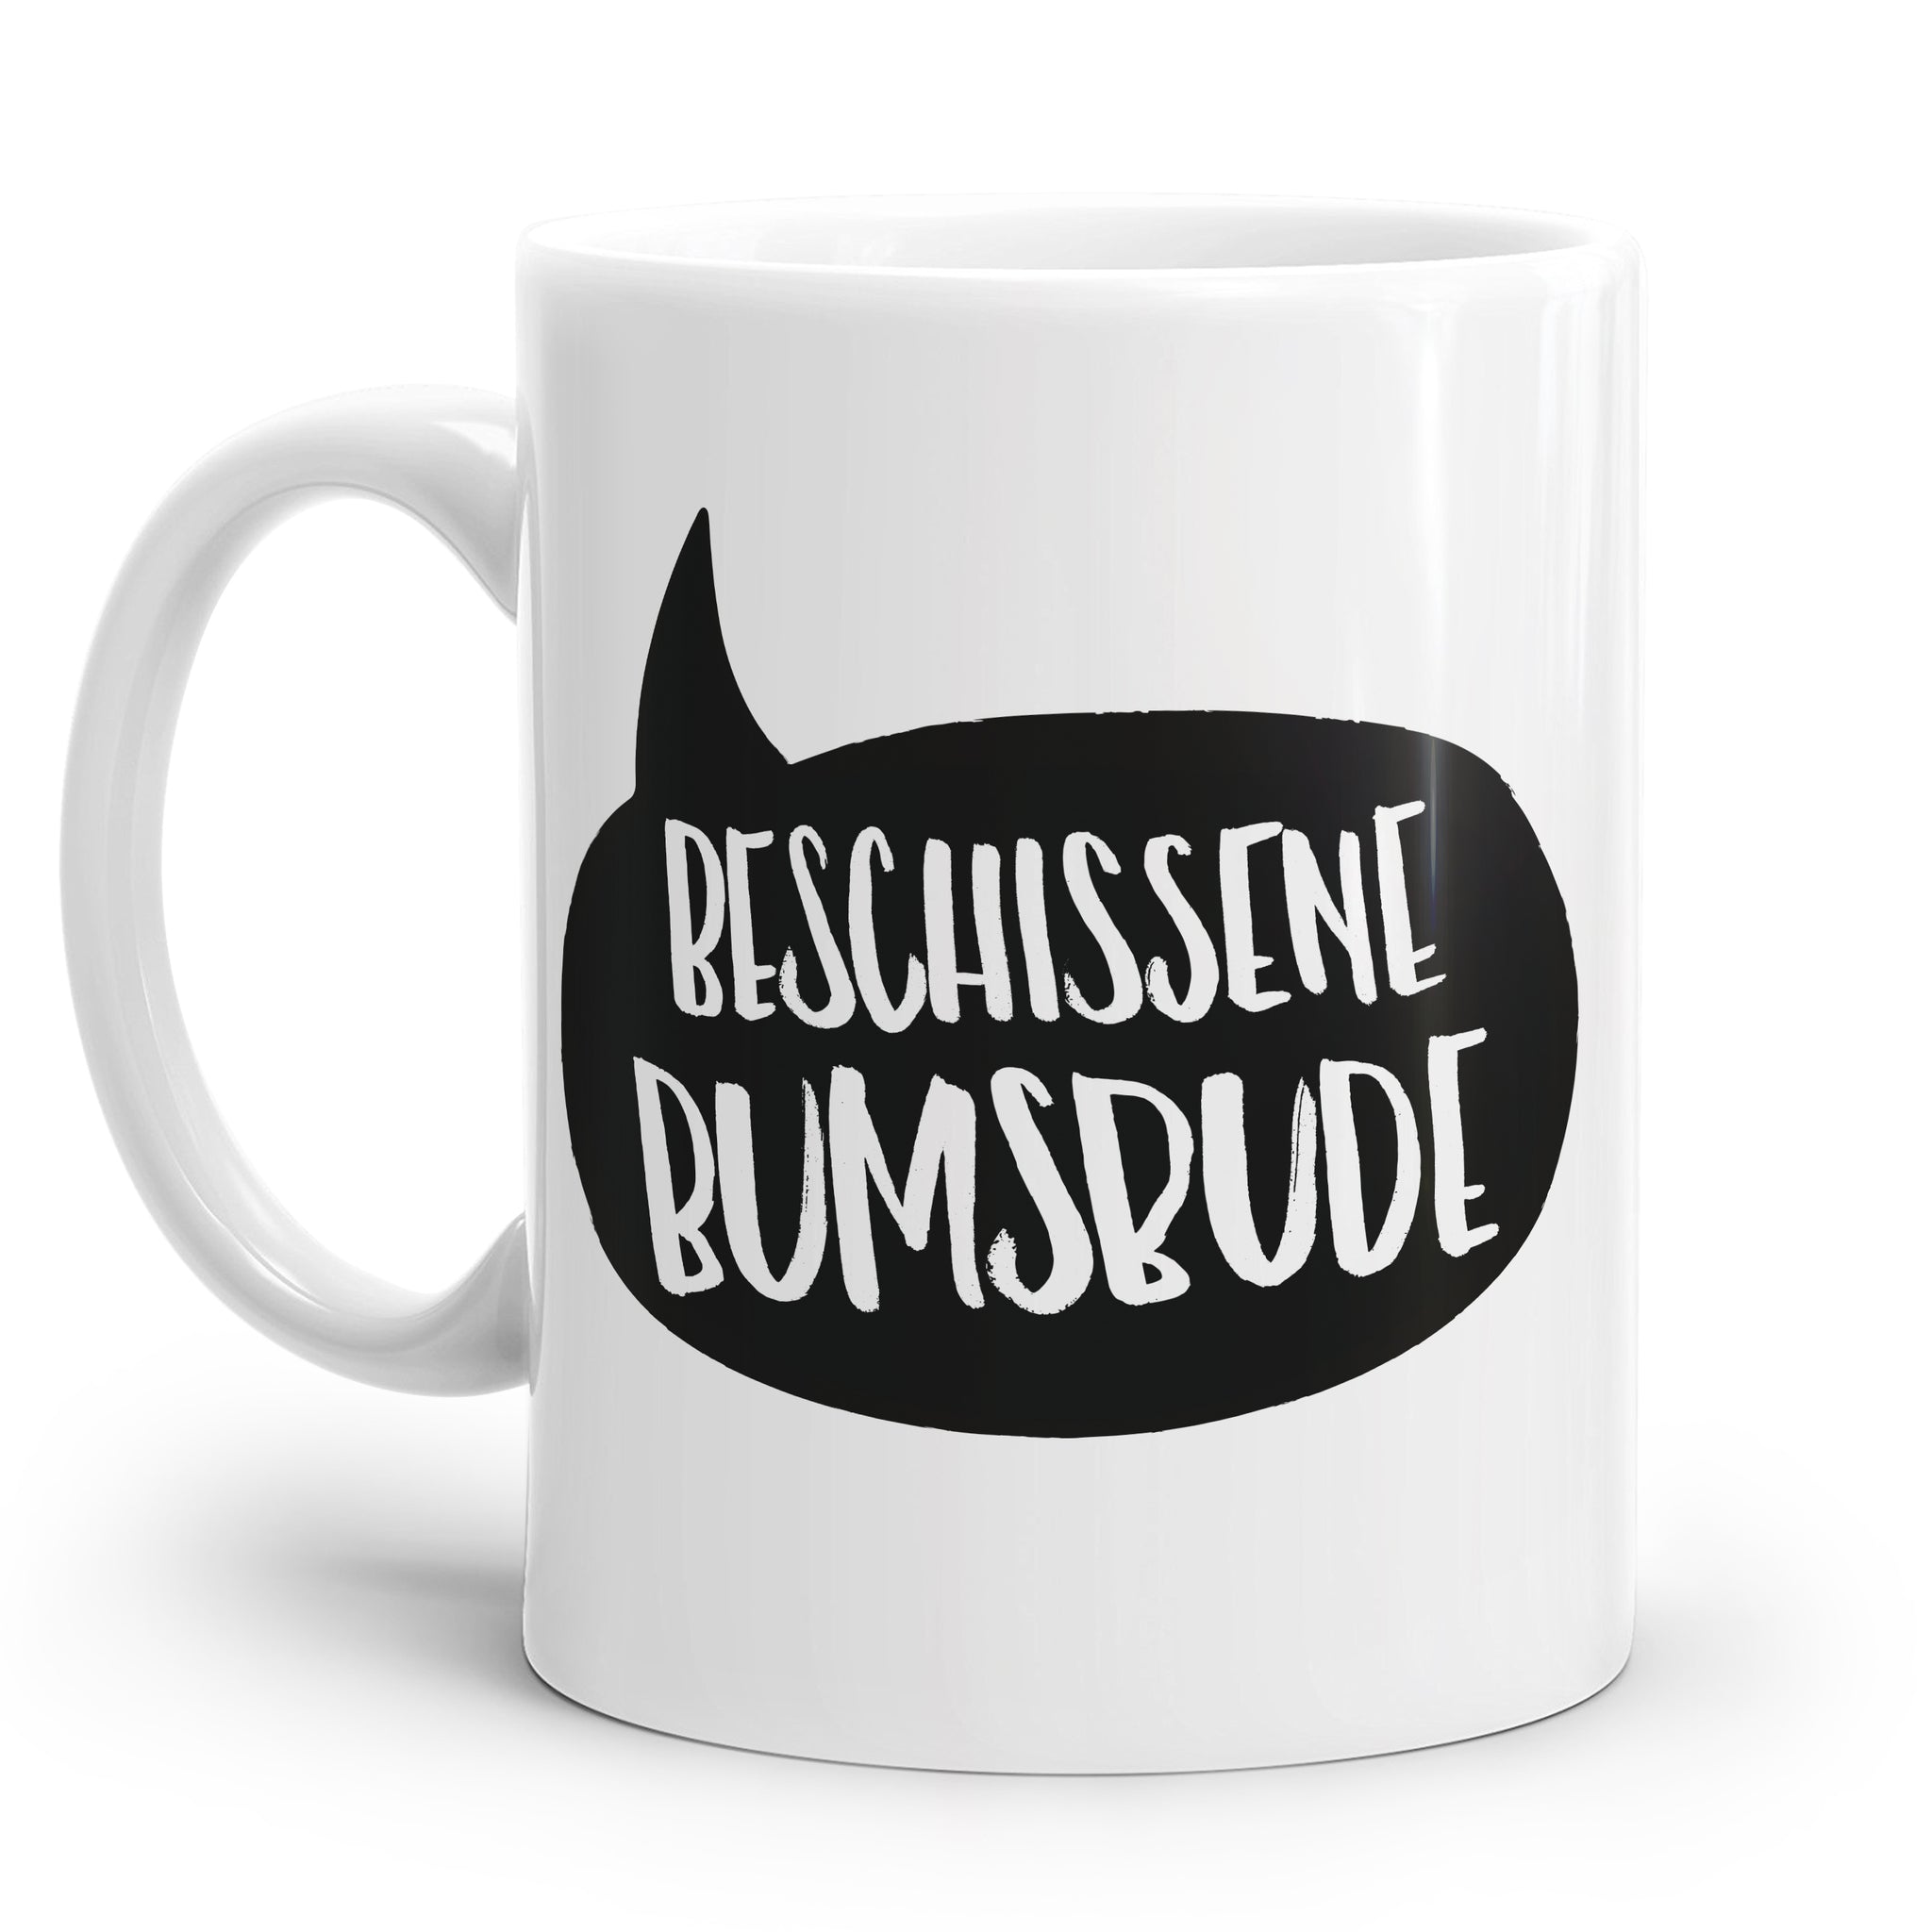 Tasse mit schwarzer Sprechblase und dem Spruch "Beschissene Bumsbude"